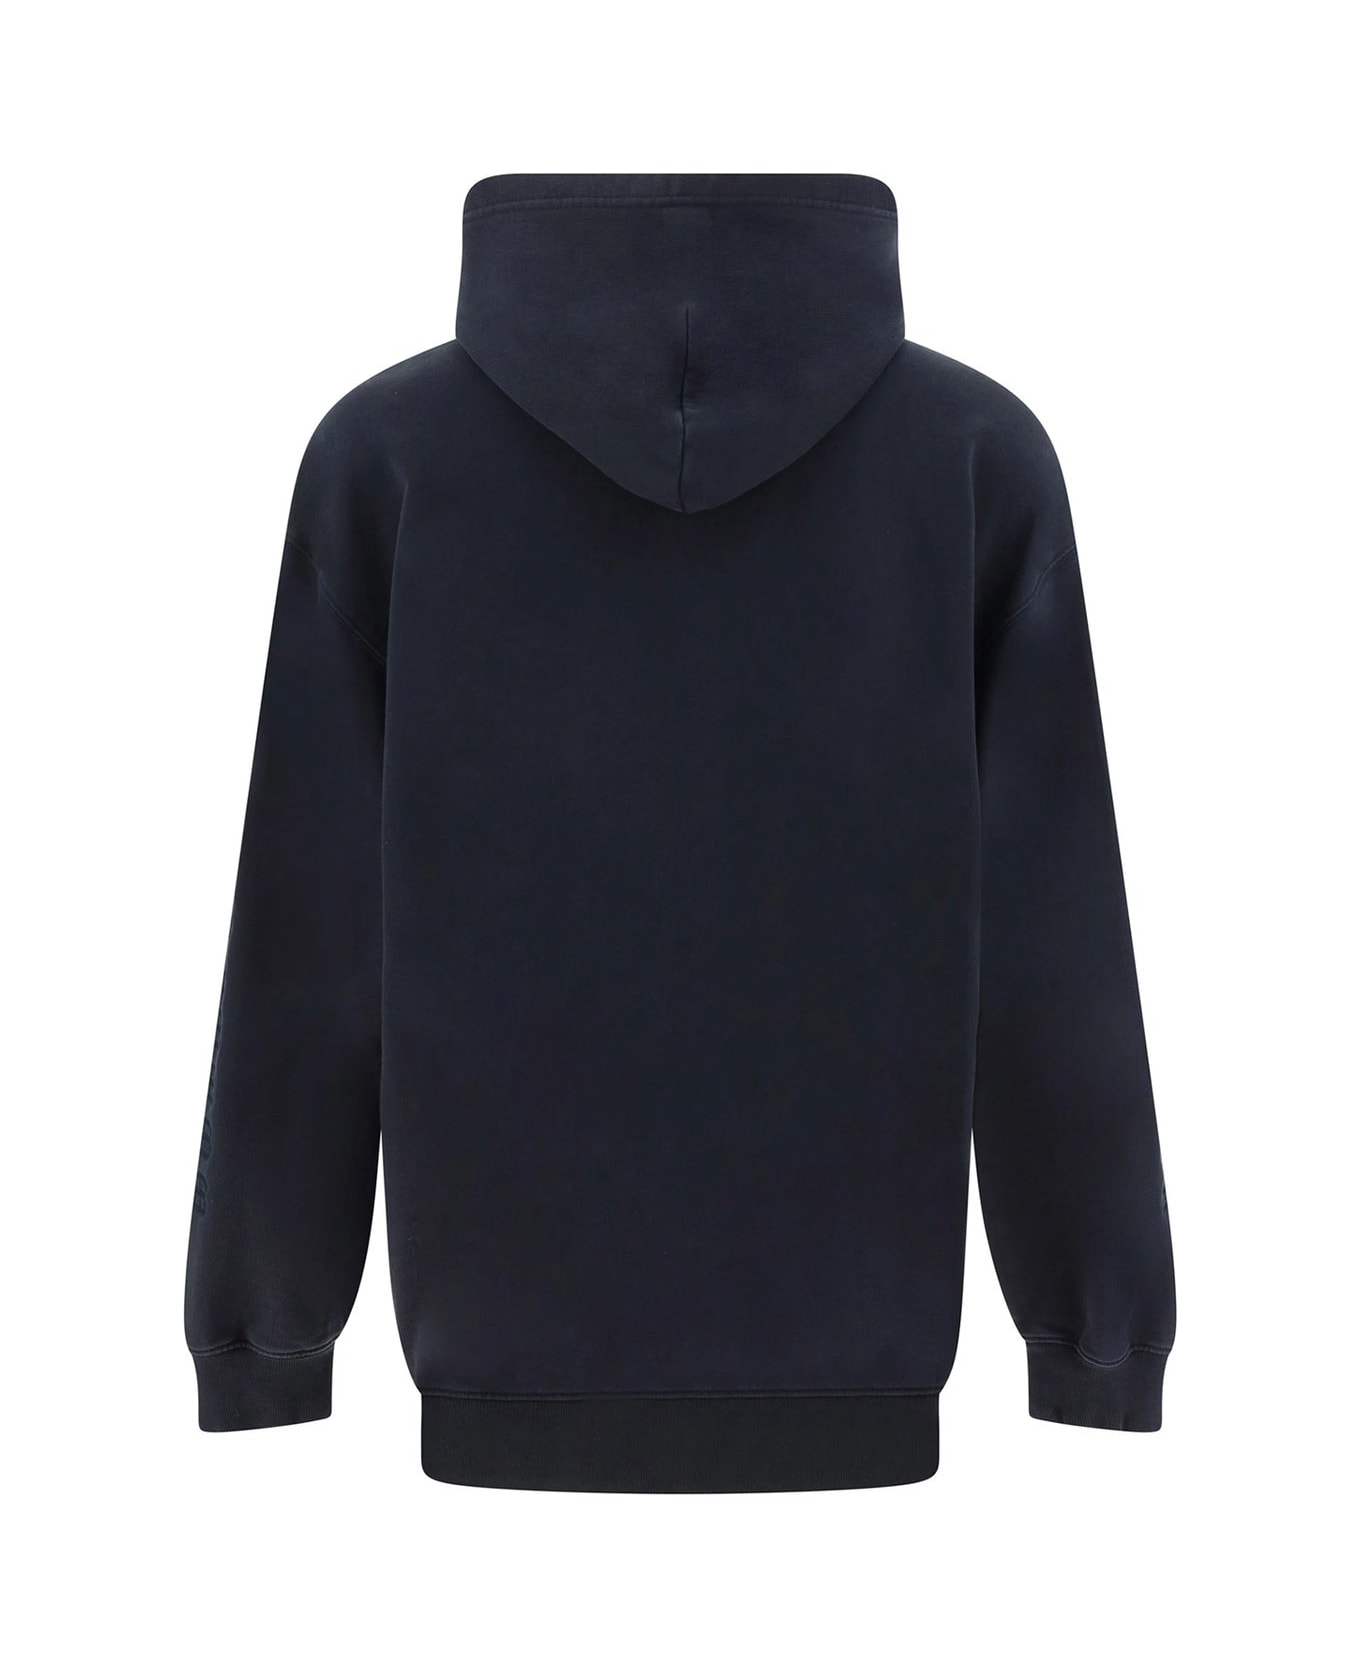 Balenciaga Sweatshirt - Black フリース